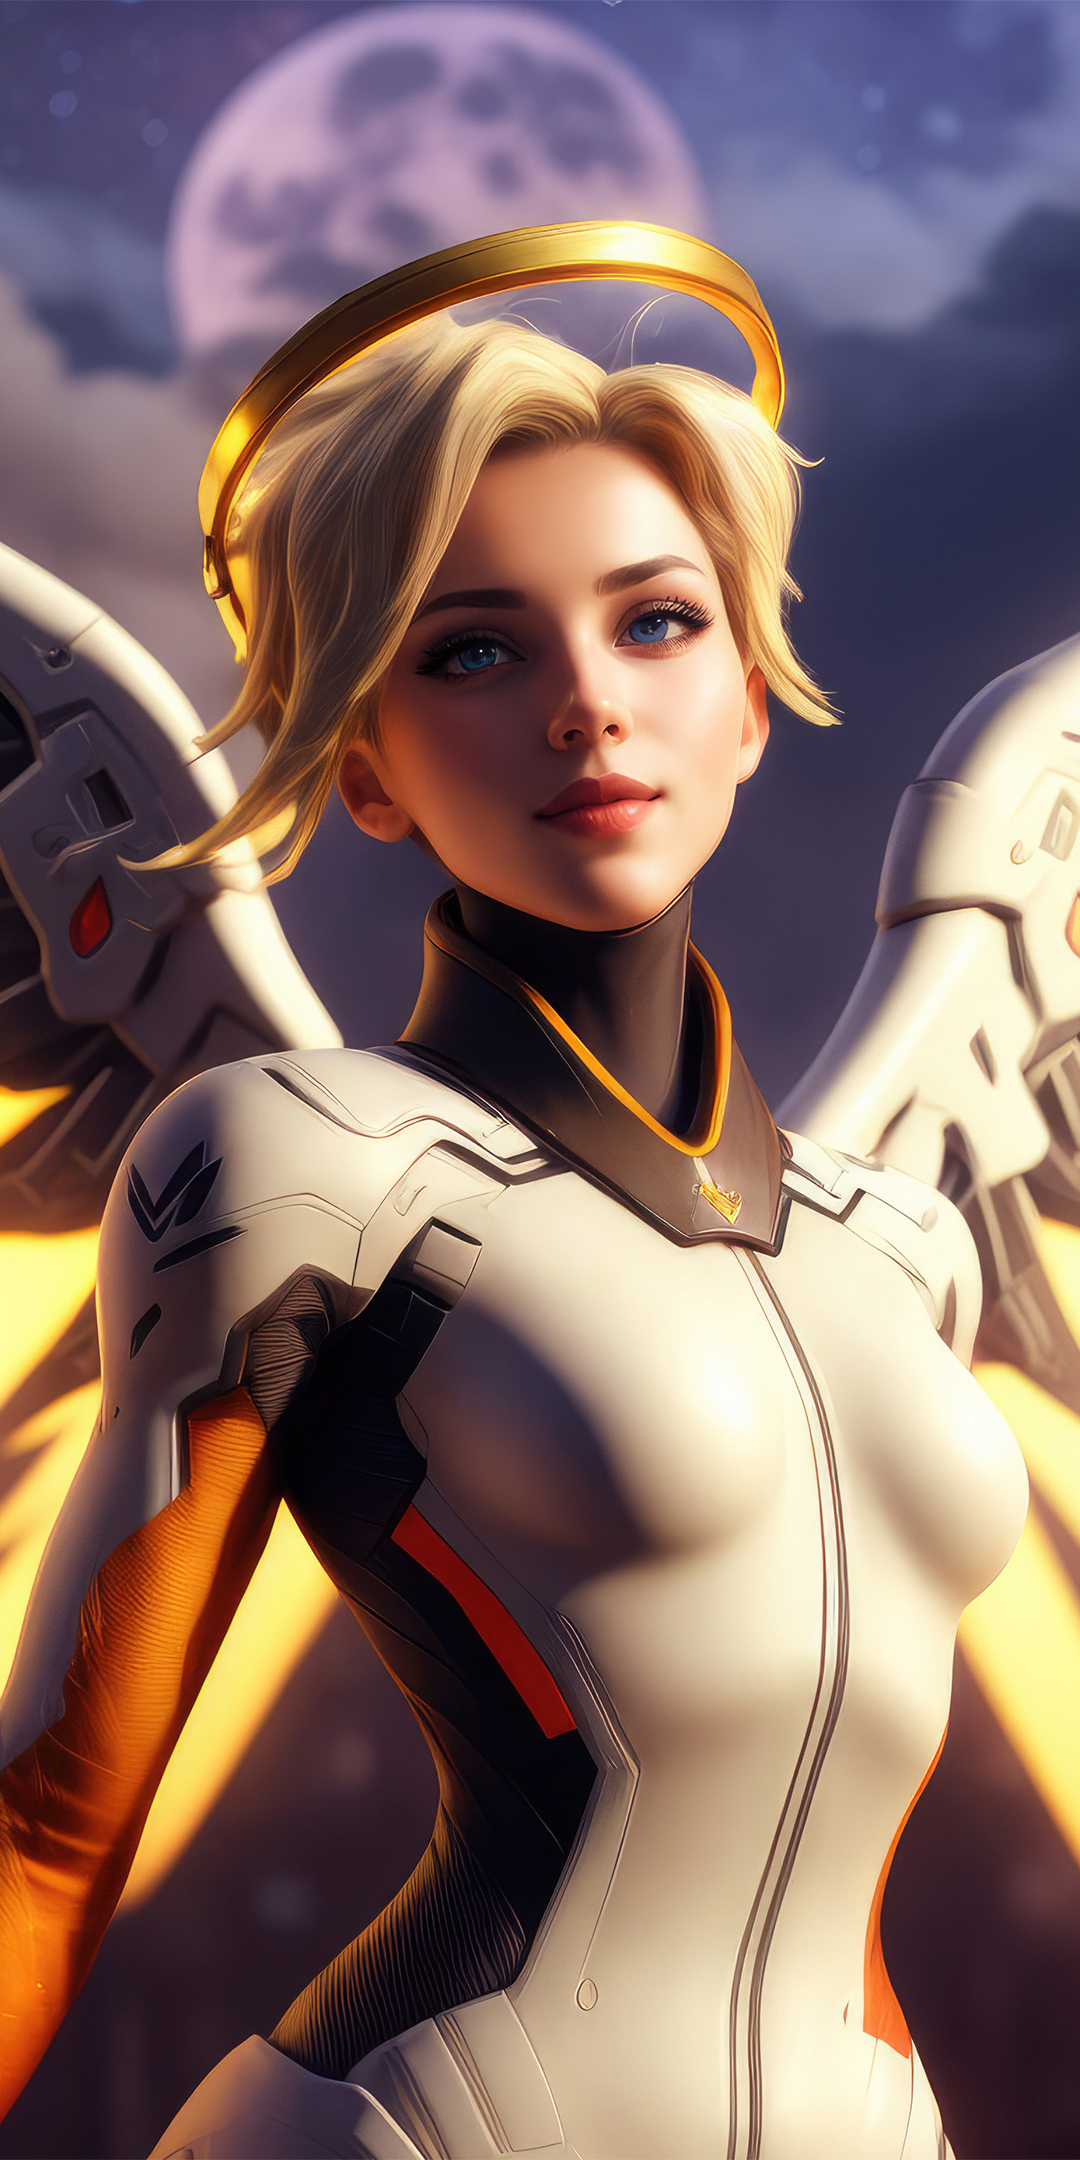 Mercy of Overwatch, The Swiss Angel, golden wings, 1080x2160 wallpaper